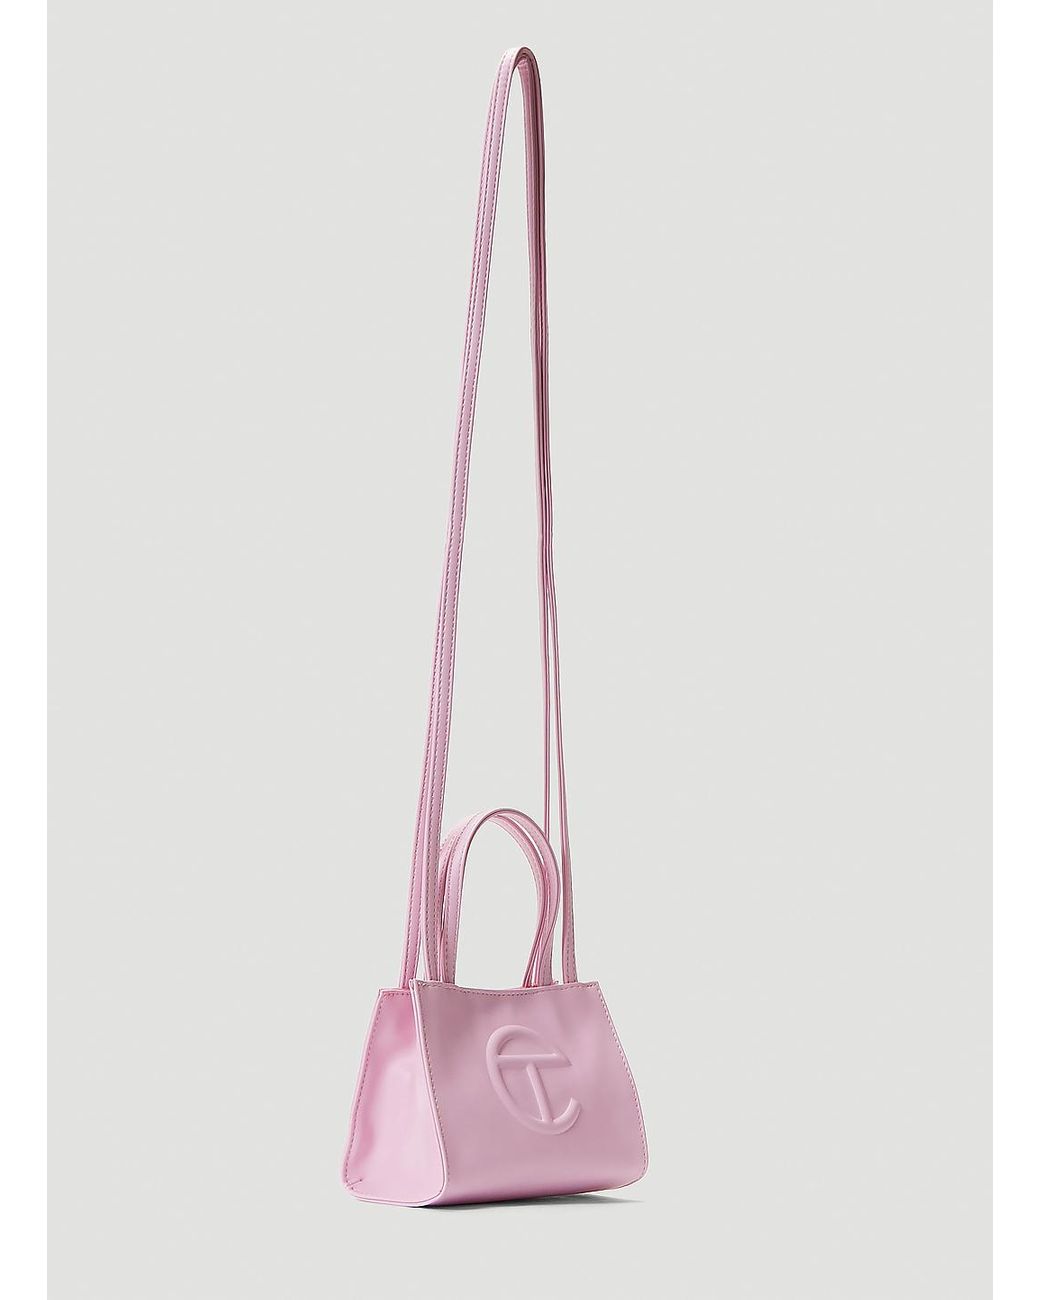 Telfar Womens Shopping Bag Pink Small – Luxe Collective